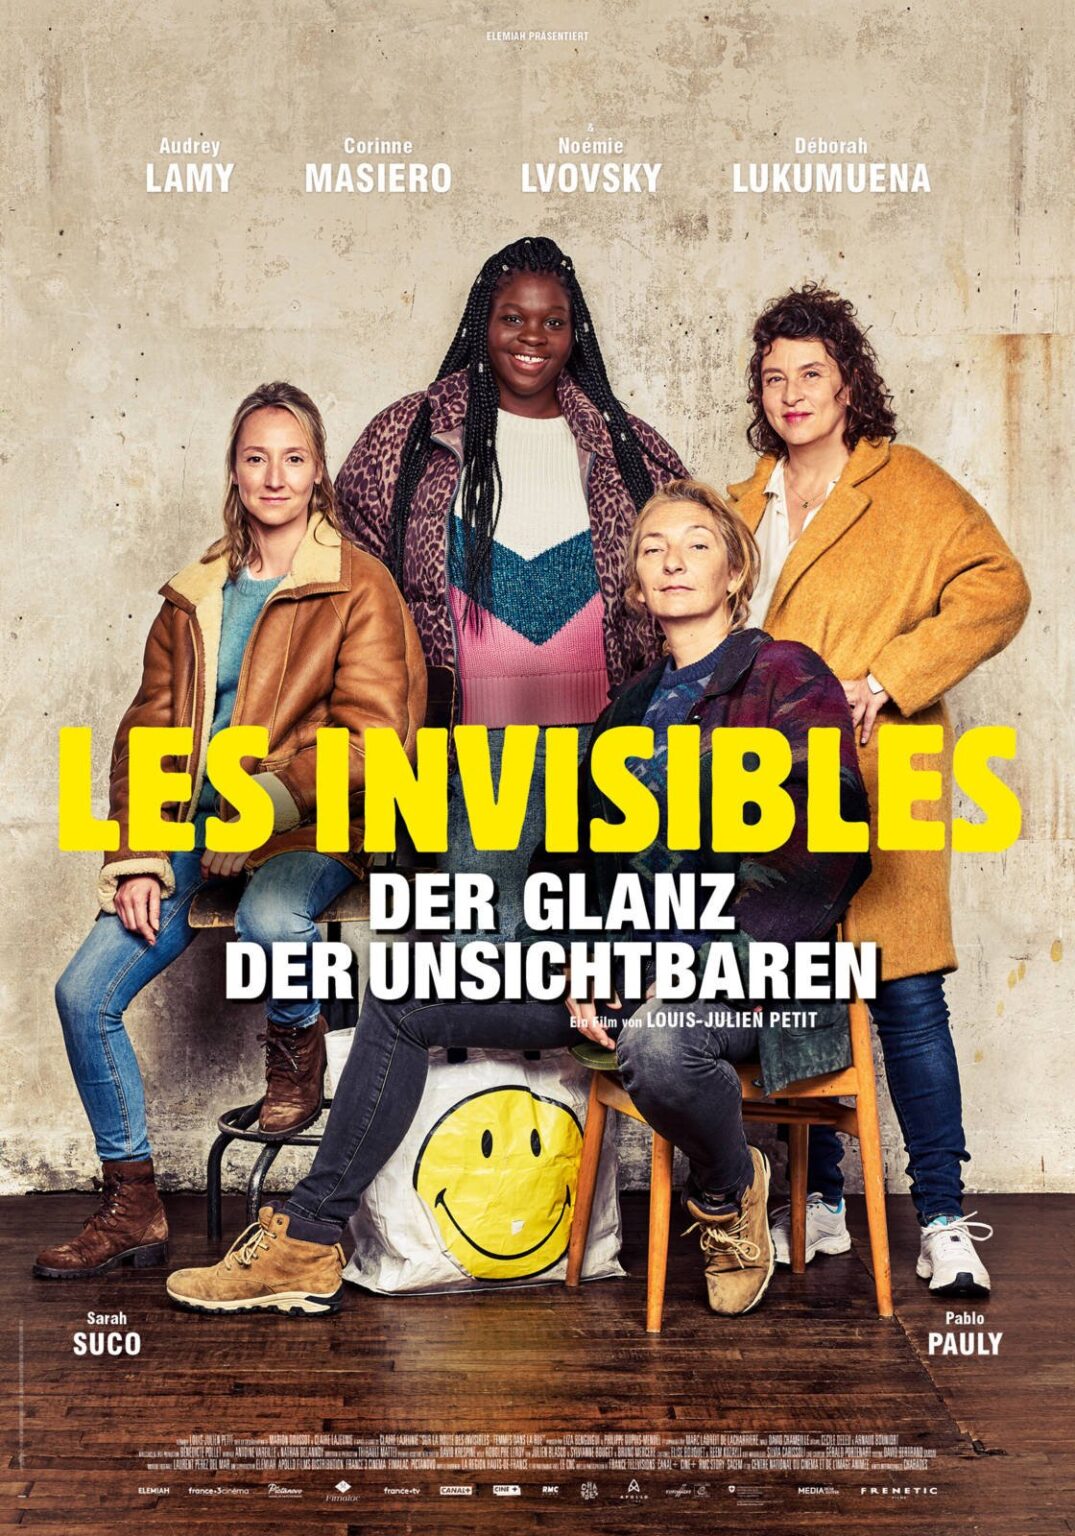 Filmvorführung Les invisibles Gemeinde Melchnau 1